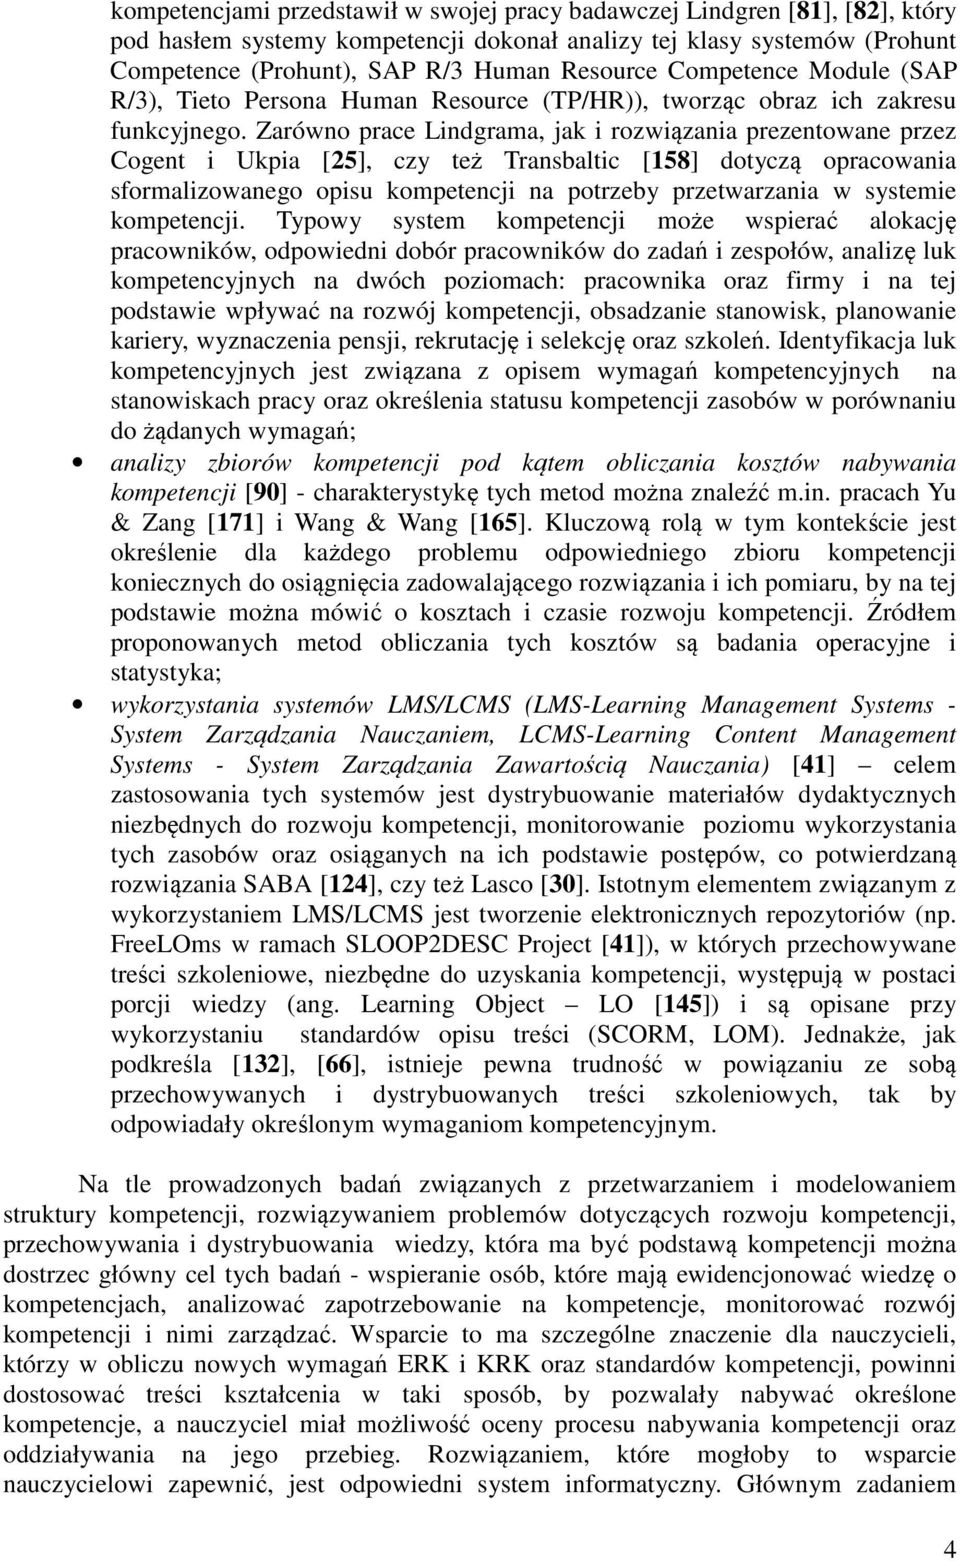 Zarówno prace Lindgrama, jak i rozwiązania prezentowane przez Cogent i Ukpia [25], czy też Transbaltic [158] dotyczą opracowania sformalizowanego opisu kompetencji na potrzeby przetwarzania w